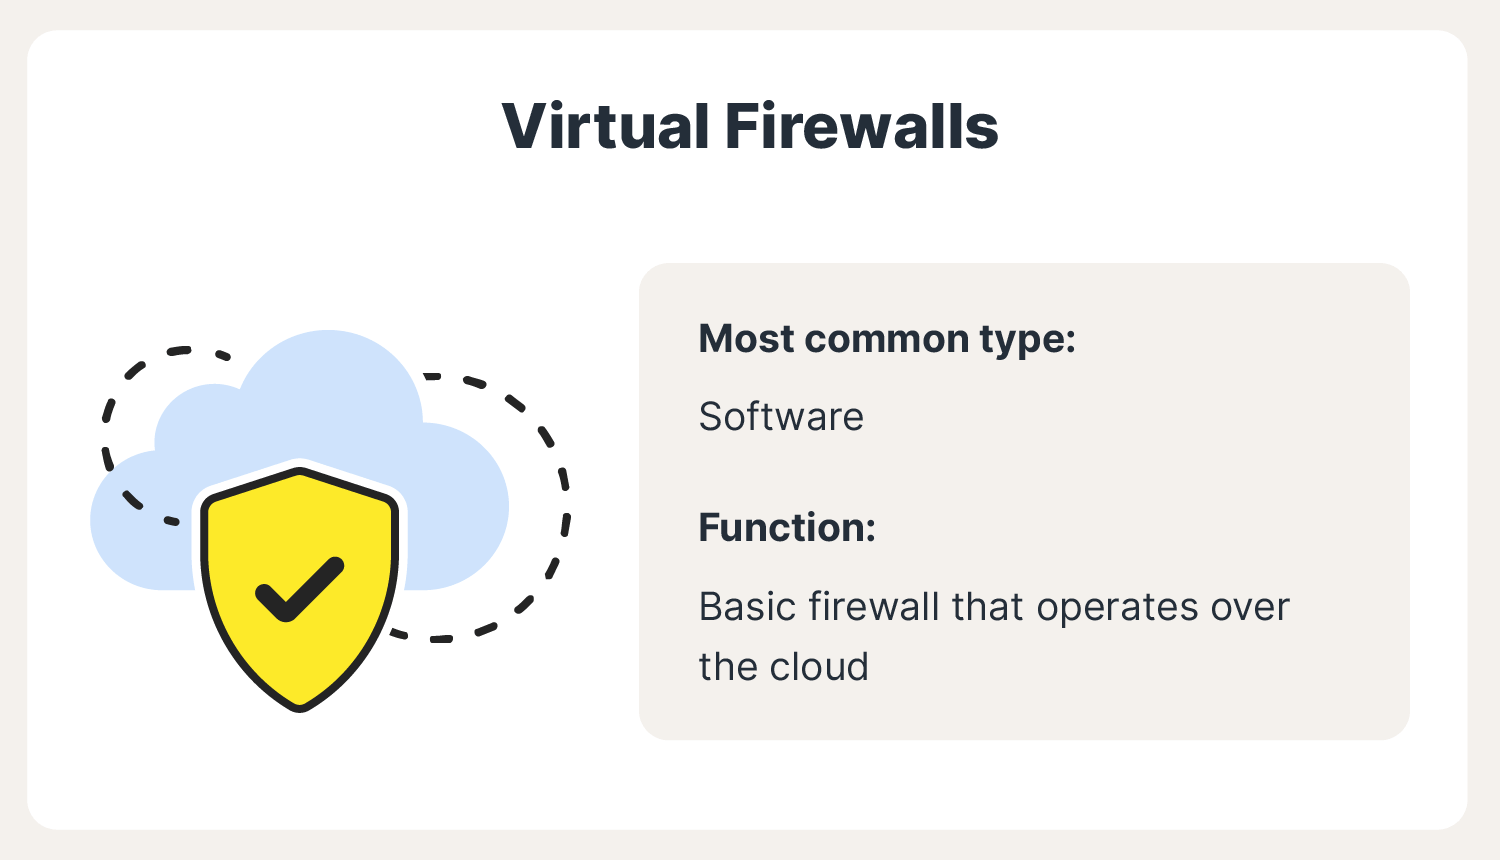 An image describes virtual firewalls, a popular type of firewall.